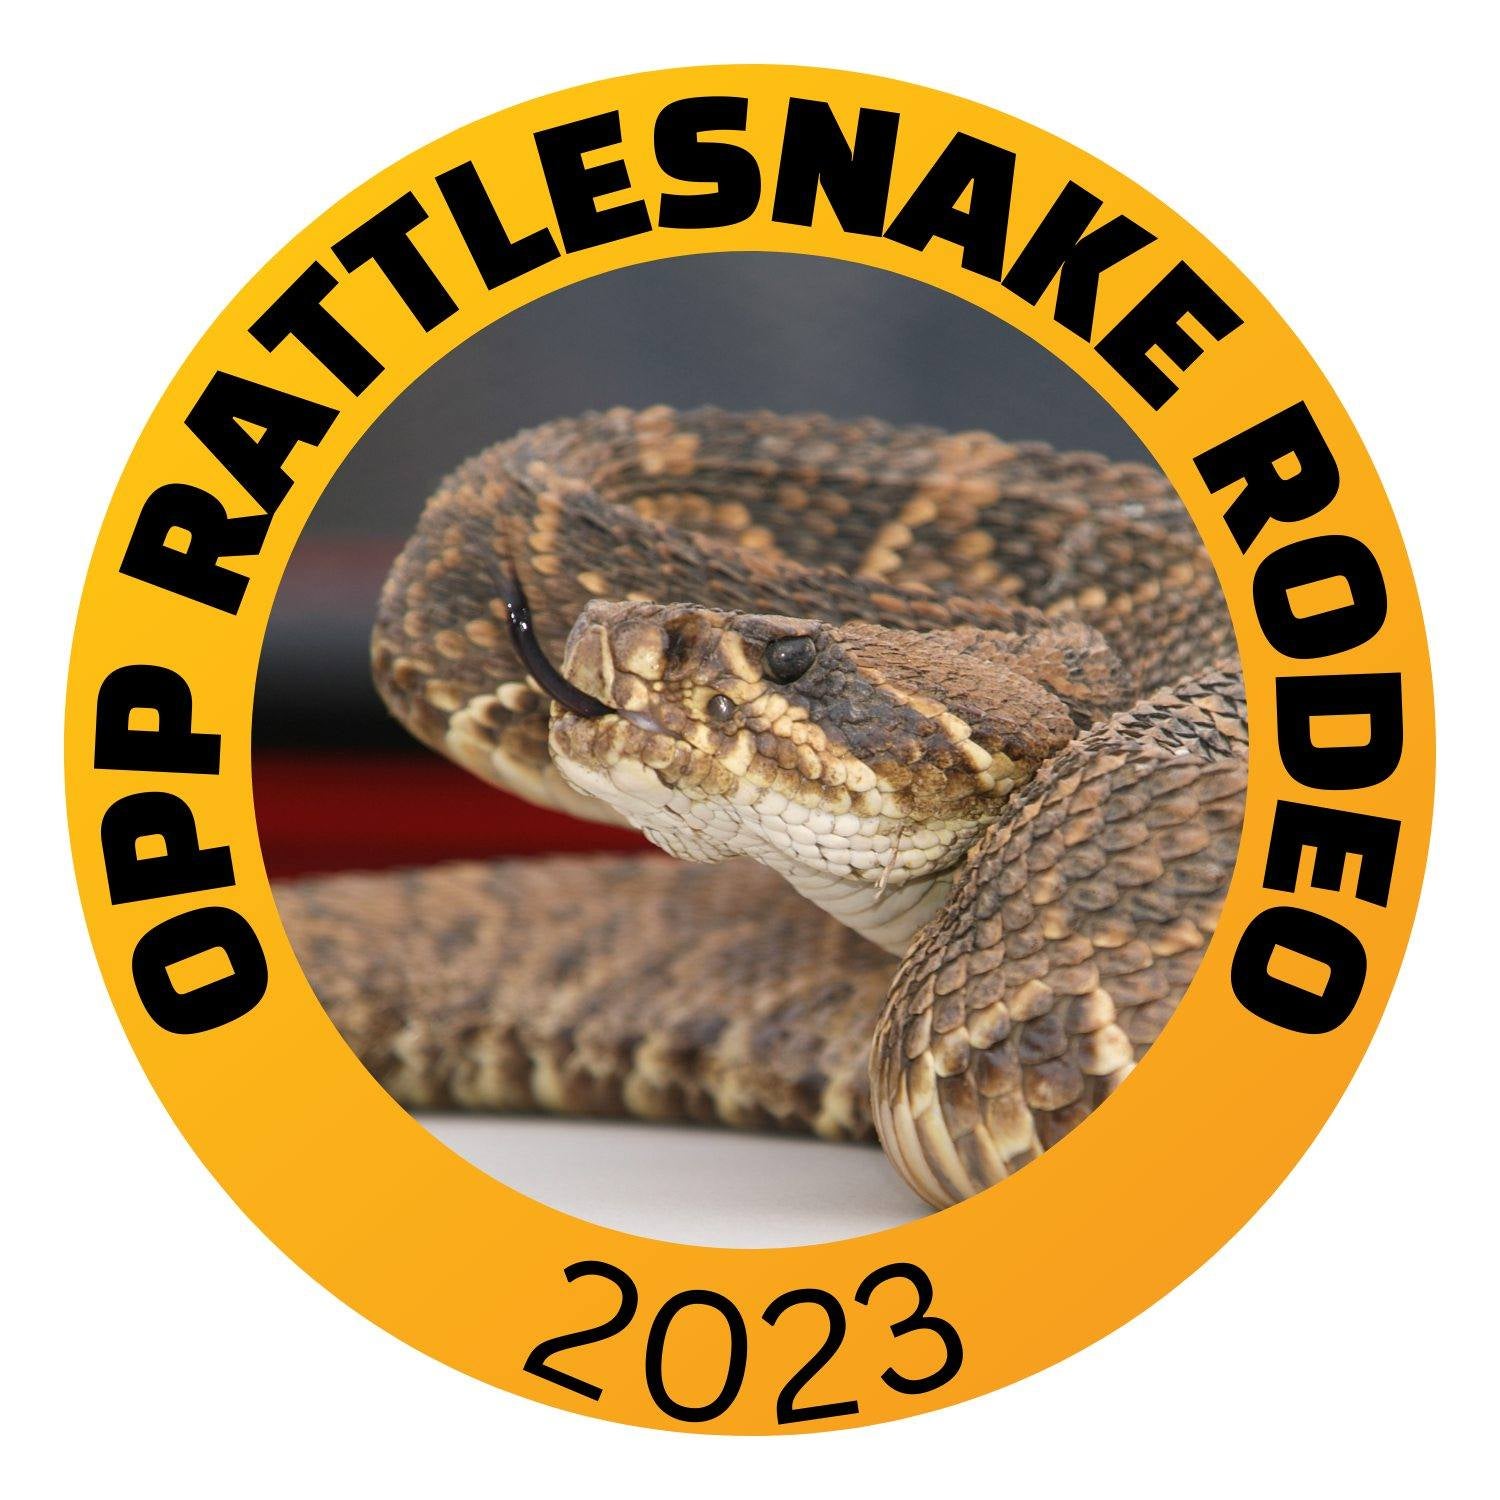 Opp Chamber: Time to name a snake for Opp Rattlesnake Rodeo